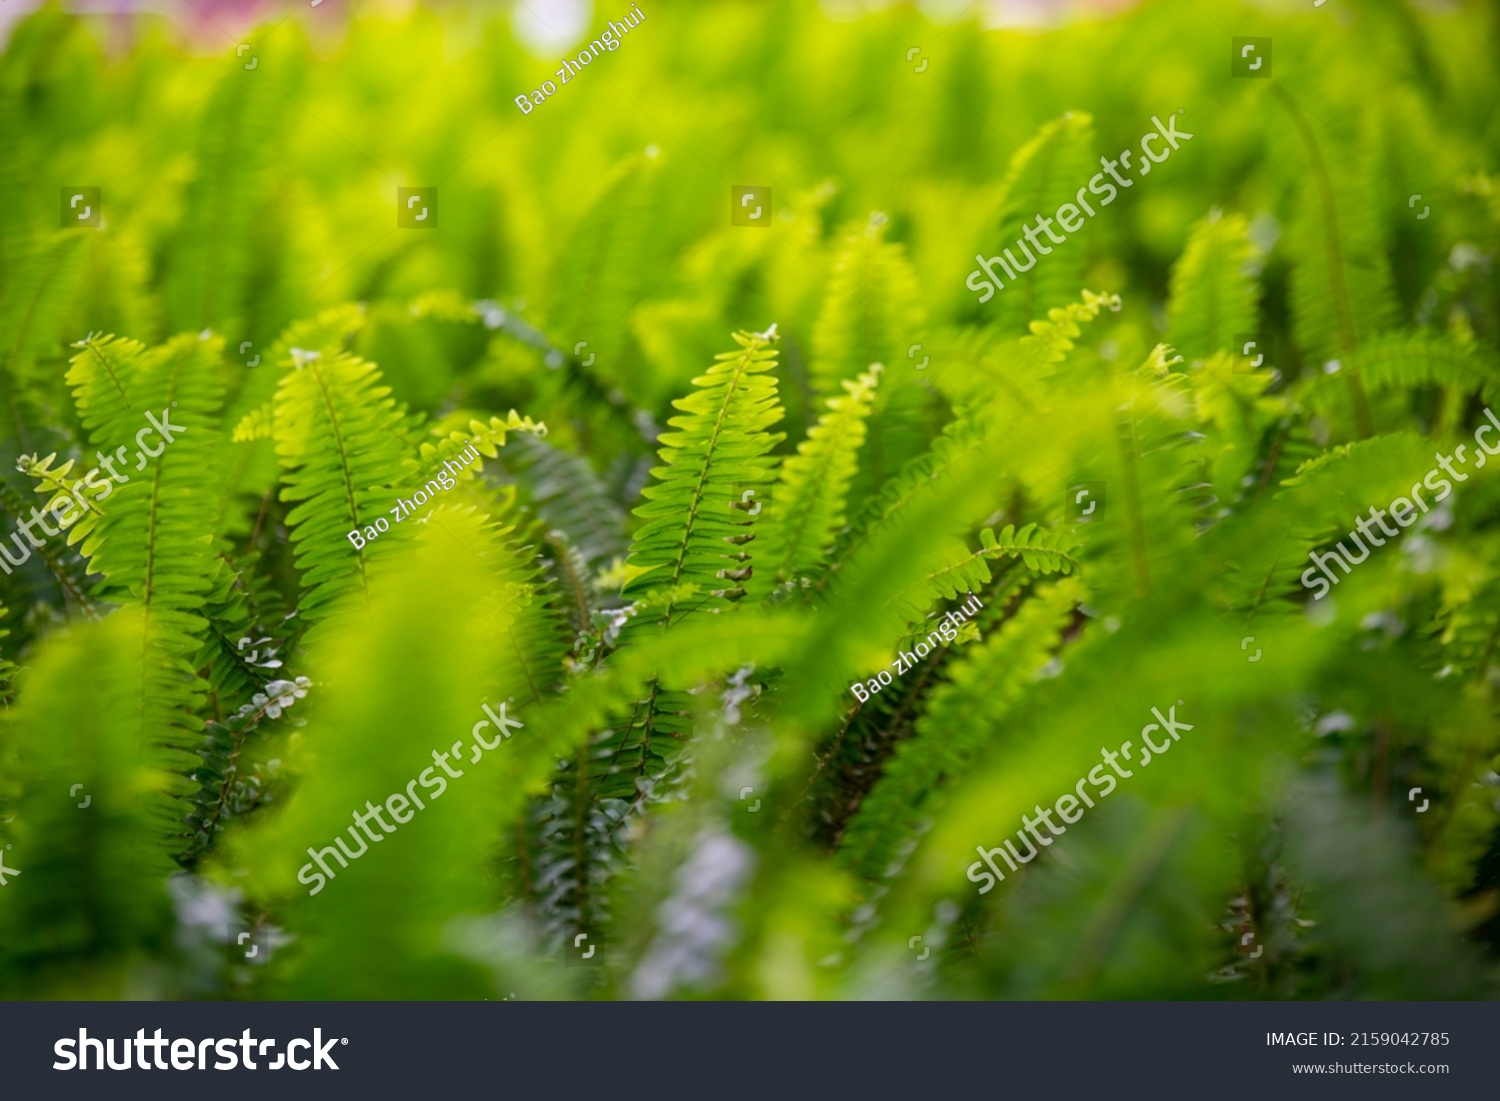 93 Kidney fern Images, Stock Photos & Vectors | Shutterstock